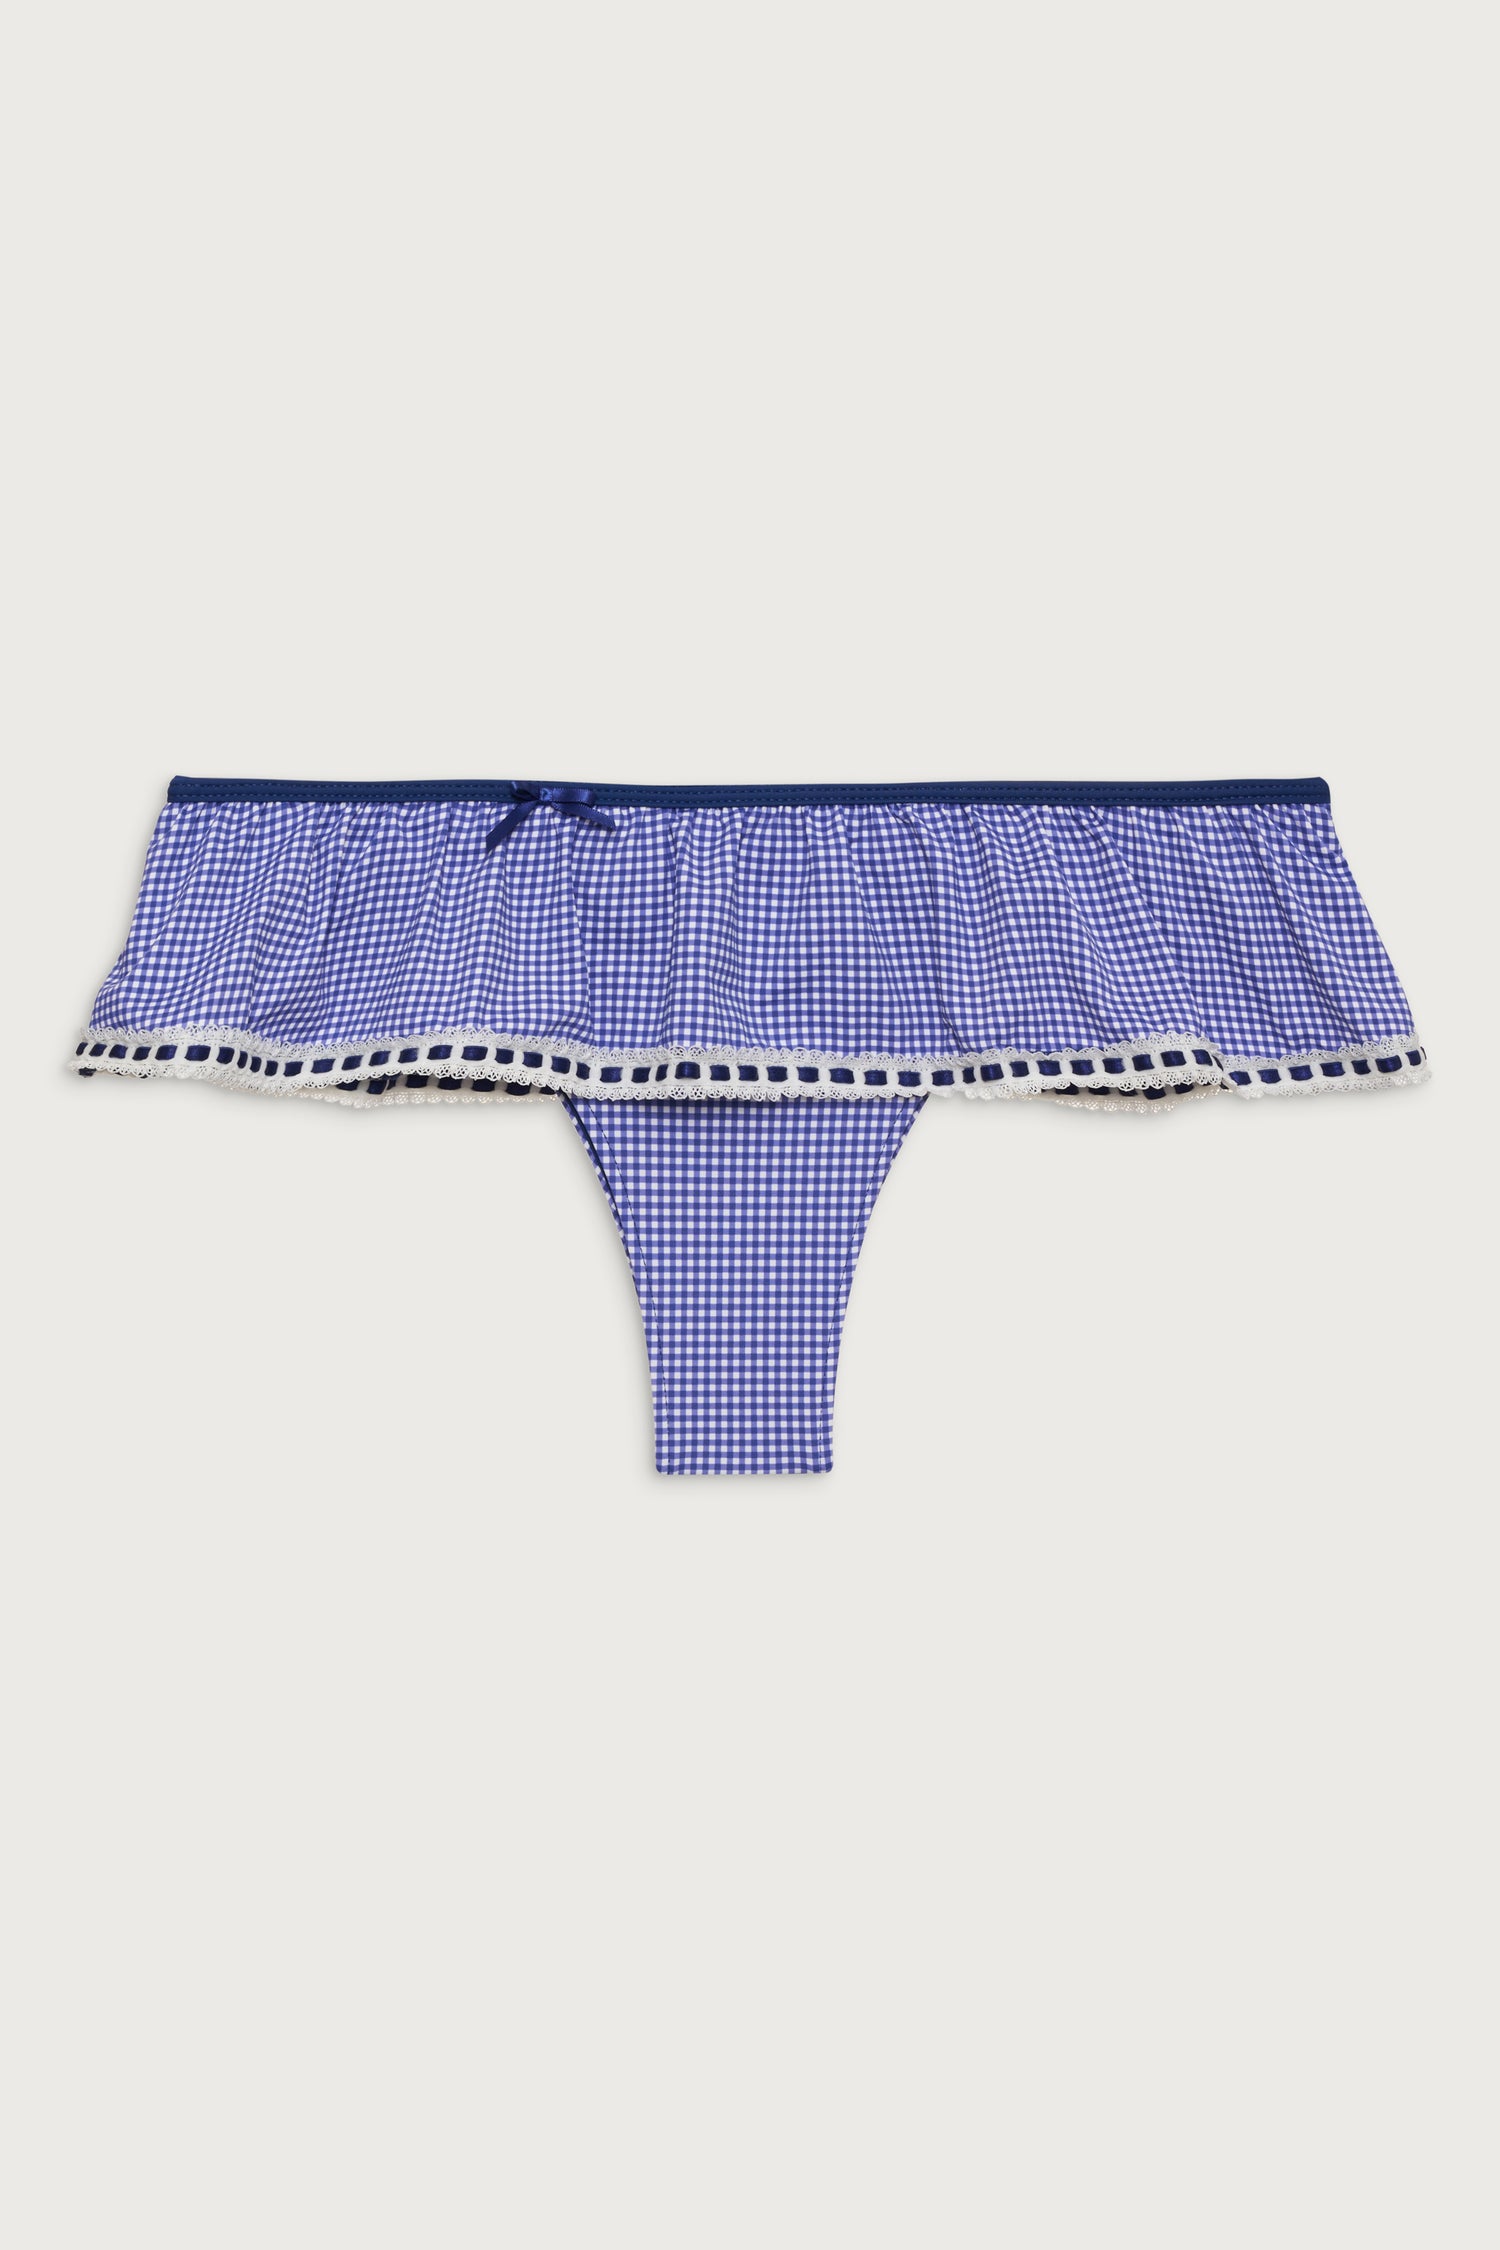 Mercer Swim Skirt - Sailor Gingham